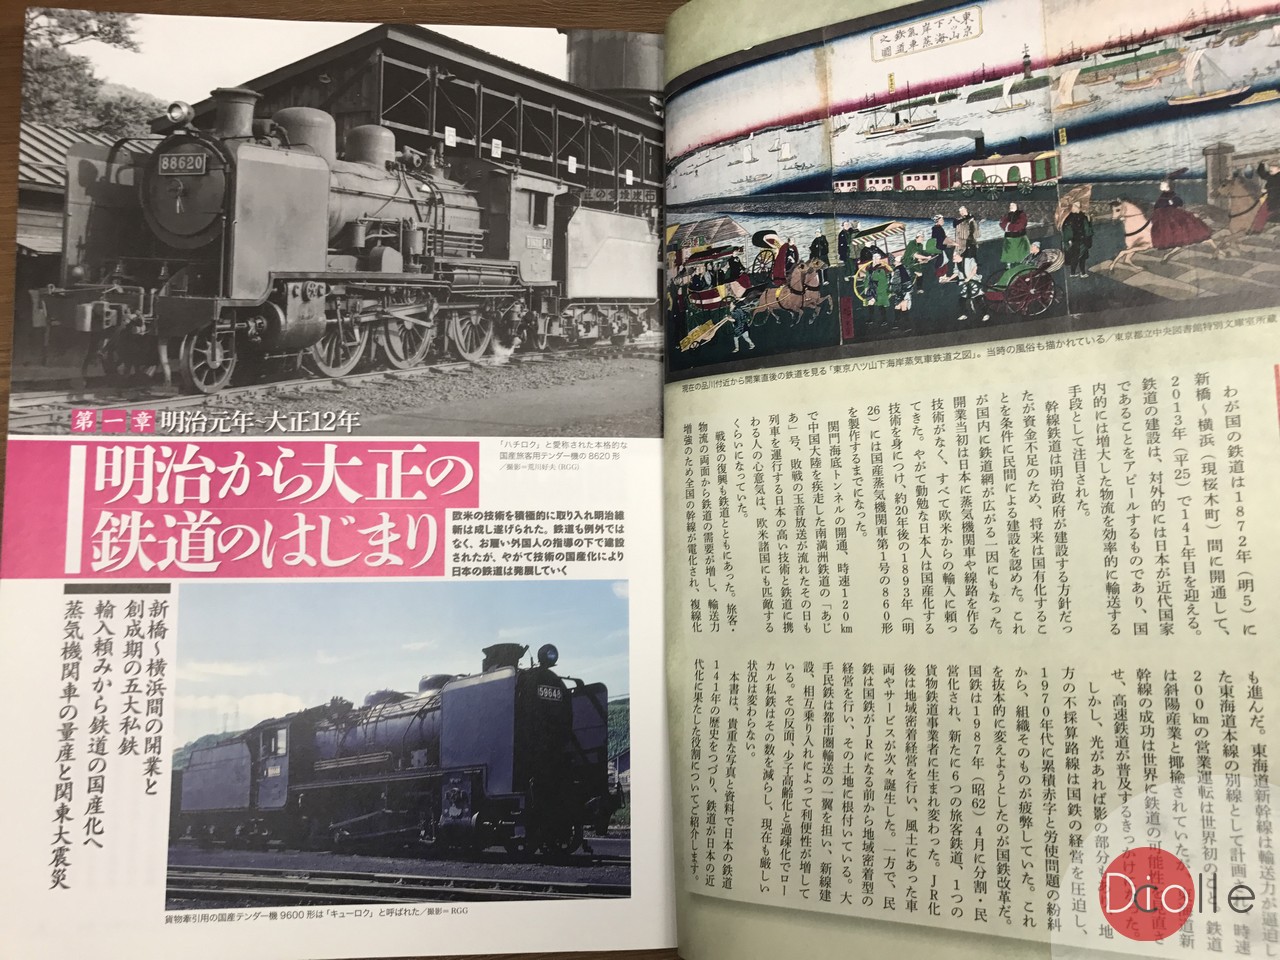 鉄道の歴史超図鑑明治から平成までを網羅した大人のビジュアル鉄道史